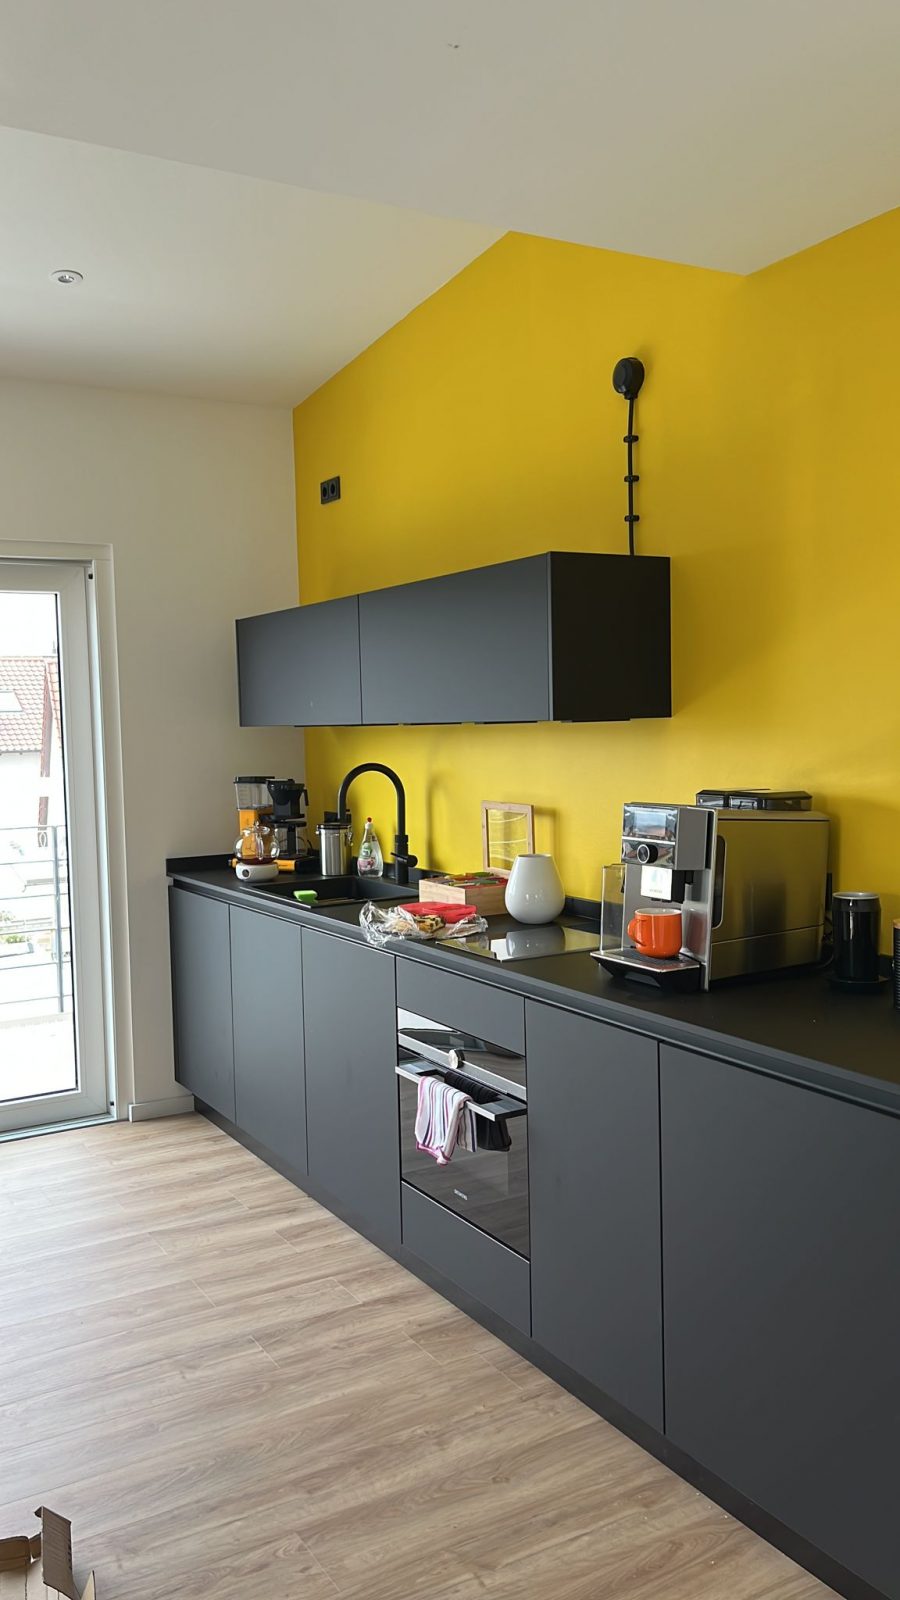 Bild von Küche im neuen Büro, komplett in schwarz